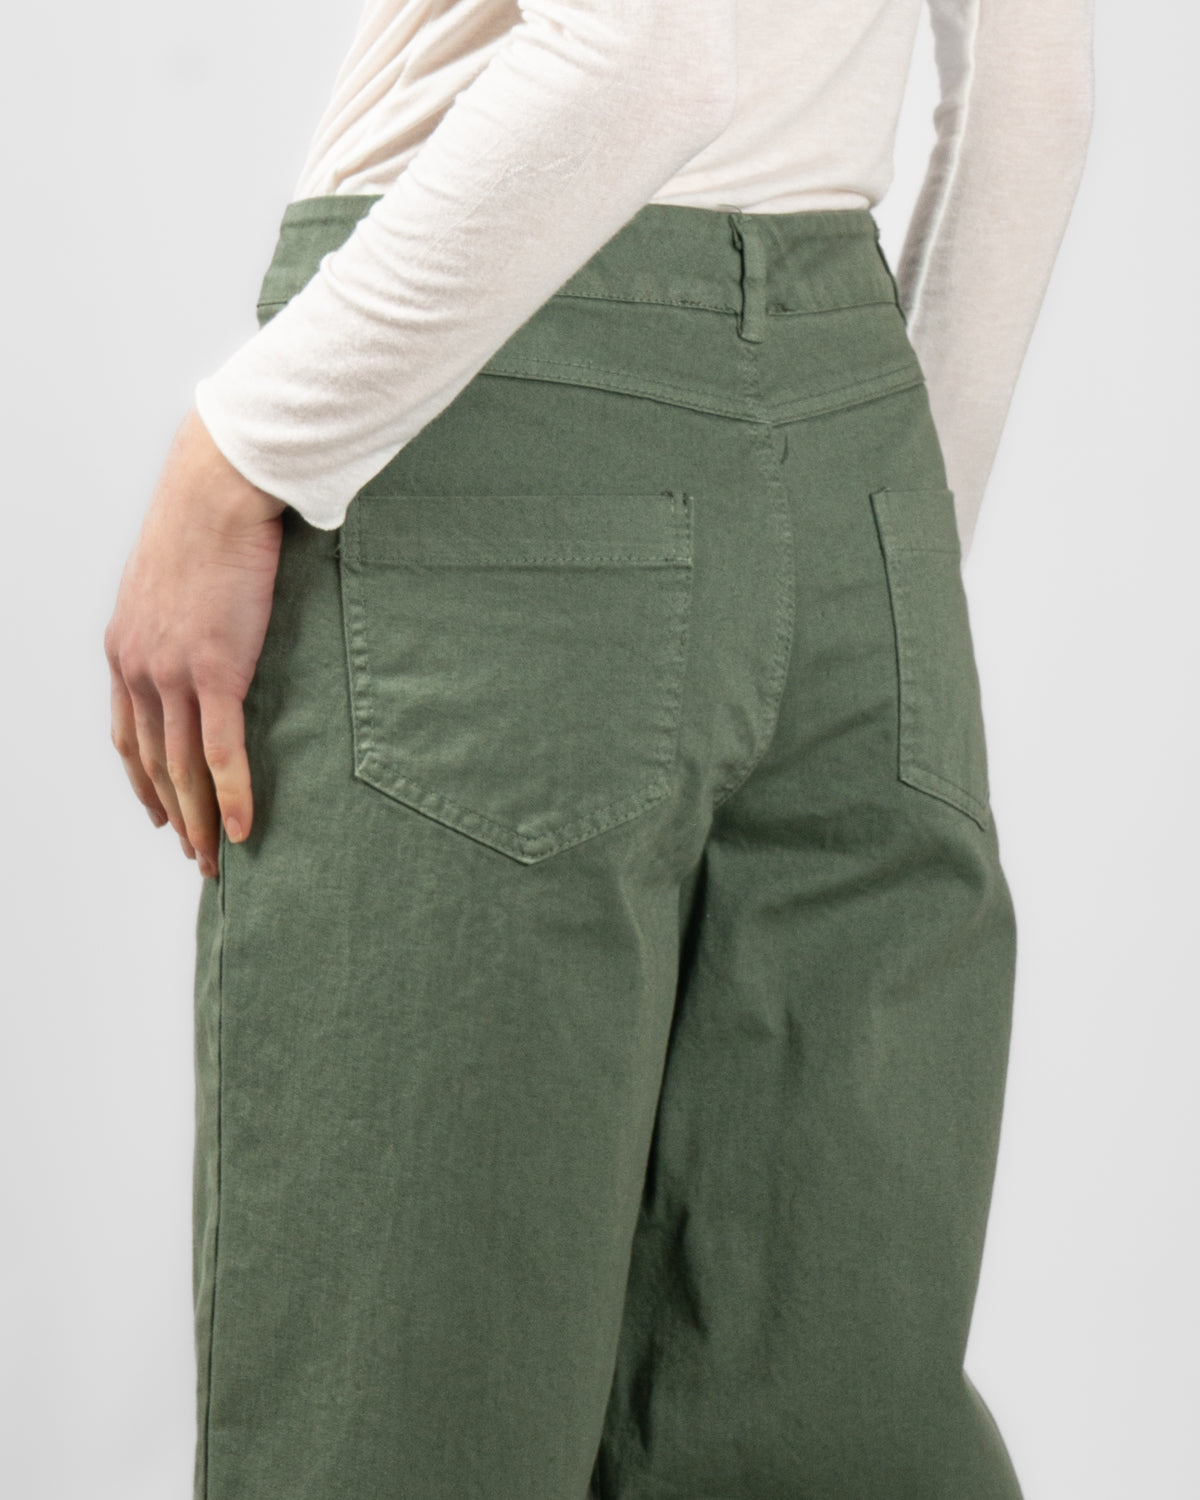 Pantaloni modello coulotte con piega